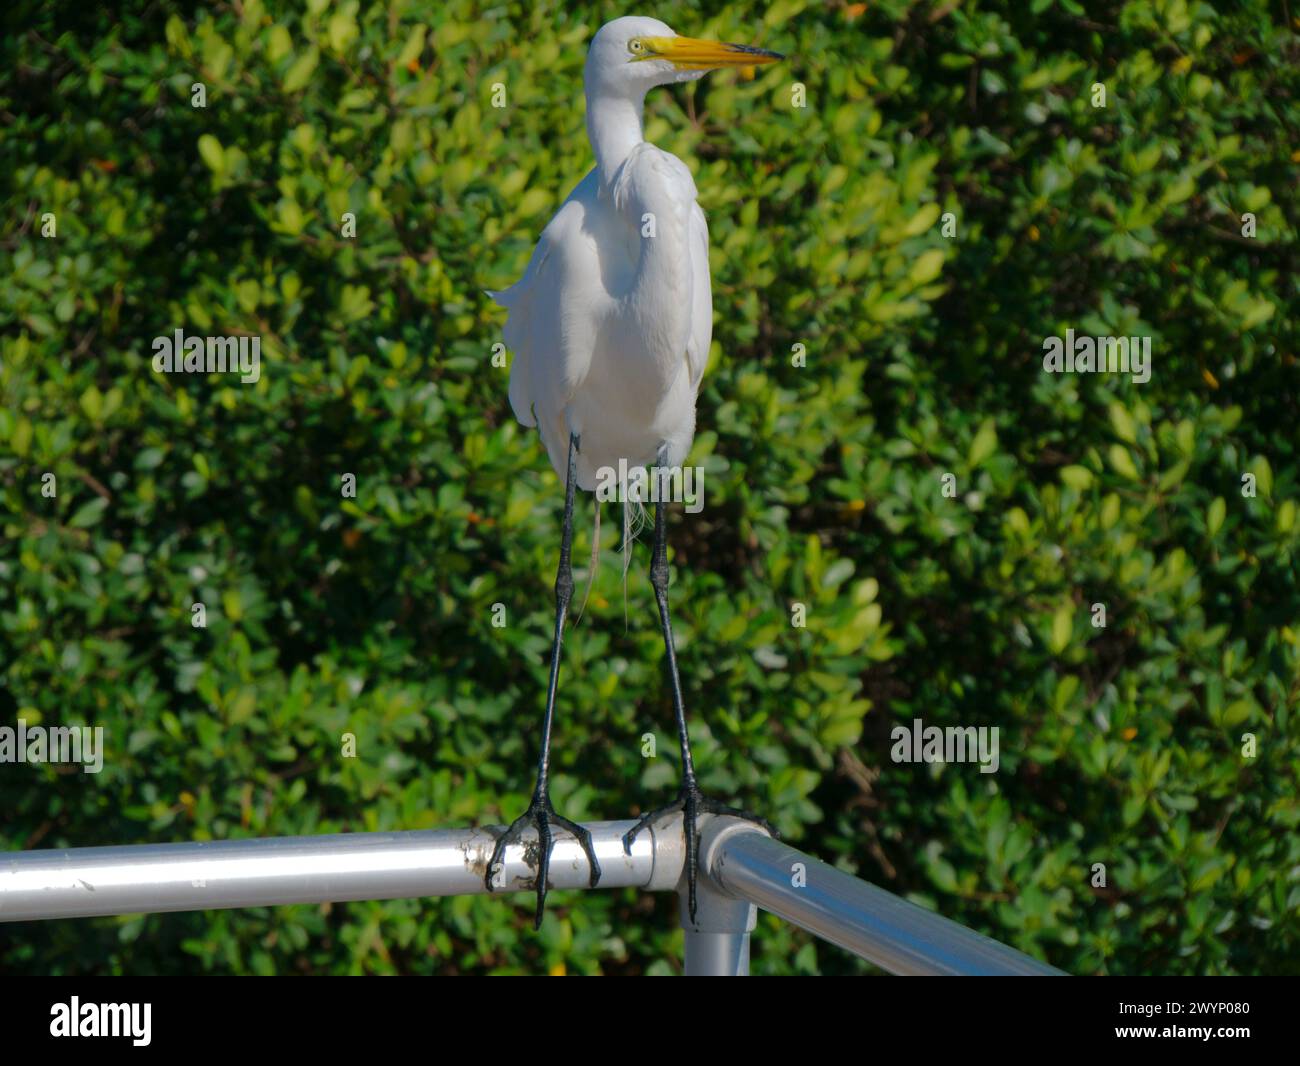 Large vue Egret blanc cou courbé perché sur rail métallique regardant à droite au parc Jungle Prada. Buissons vert baie en arrière-plan. Dans Petersburg, Floride Banque D'Images